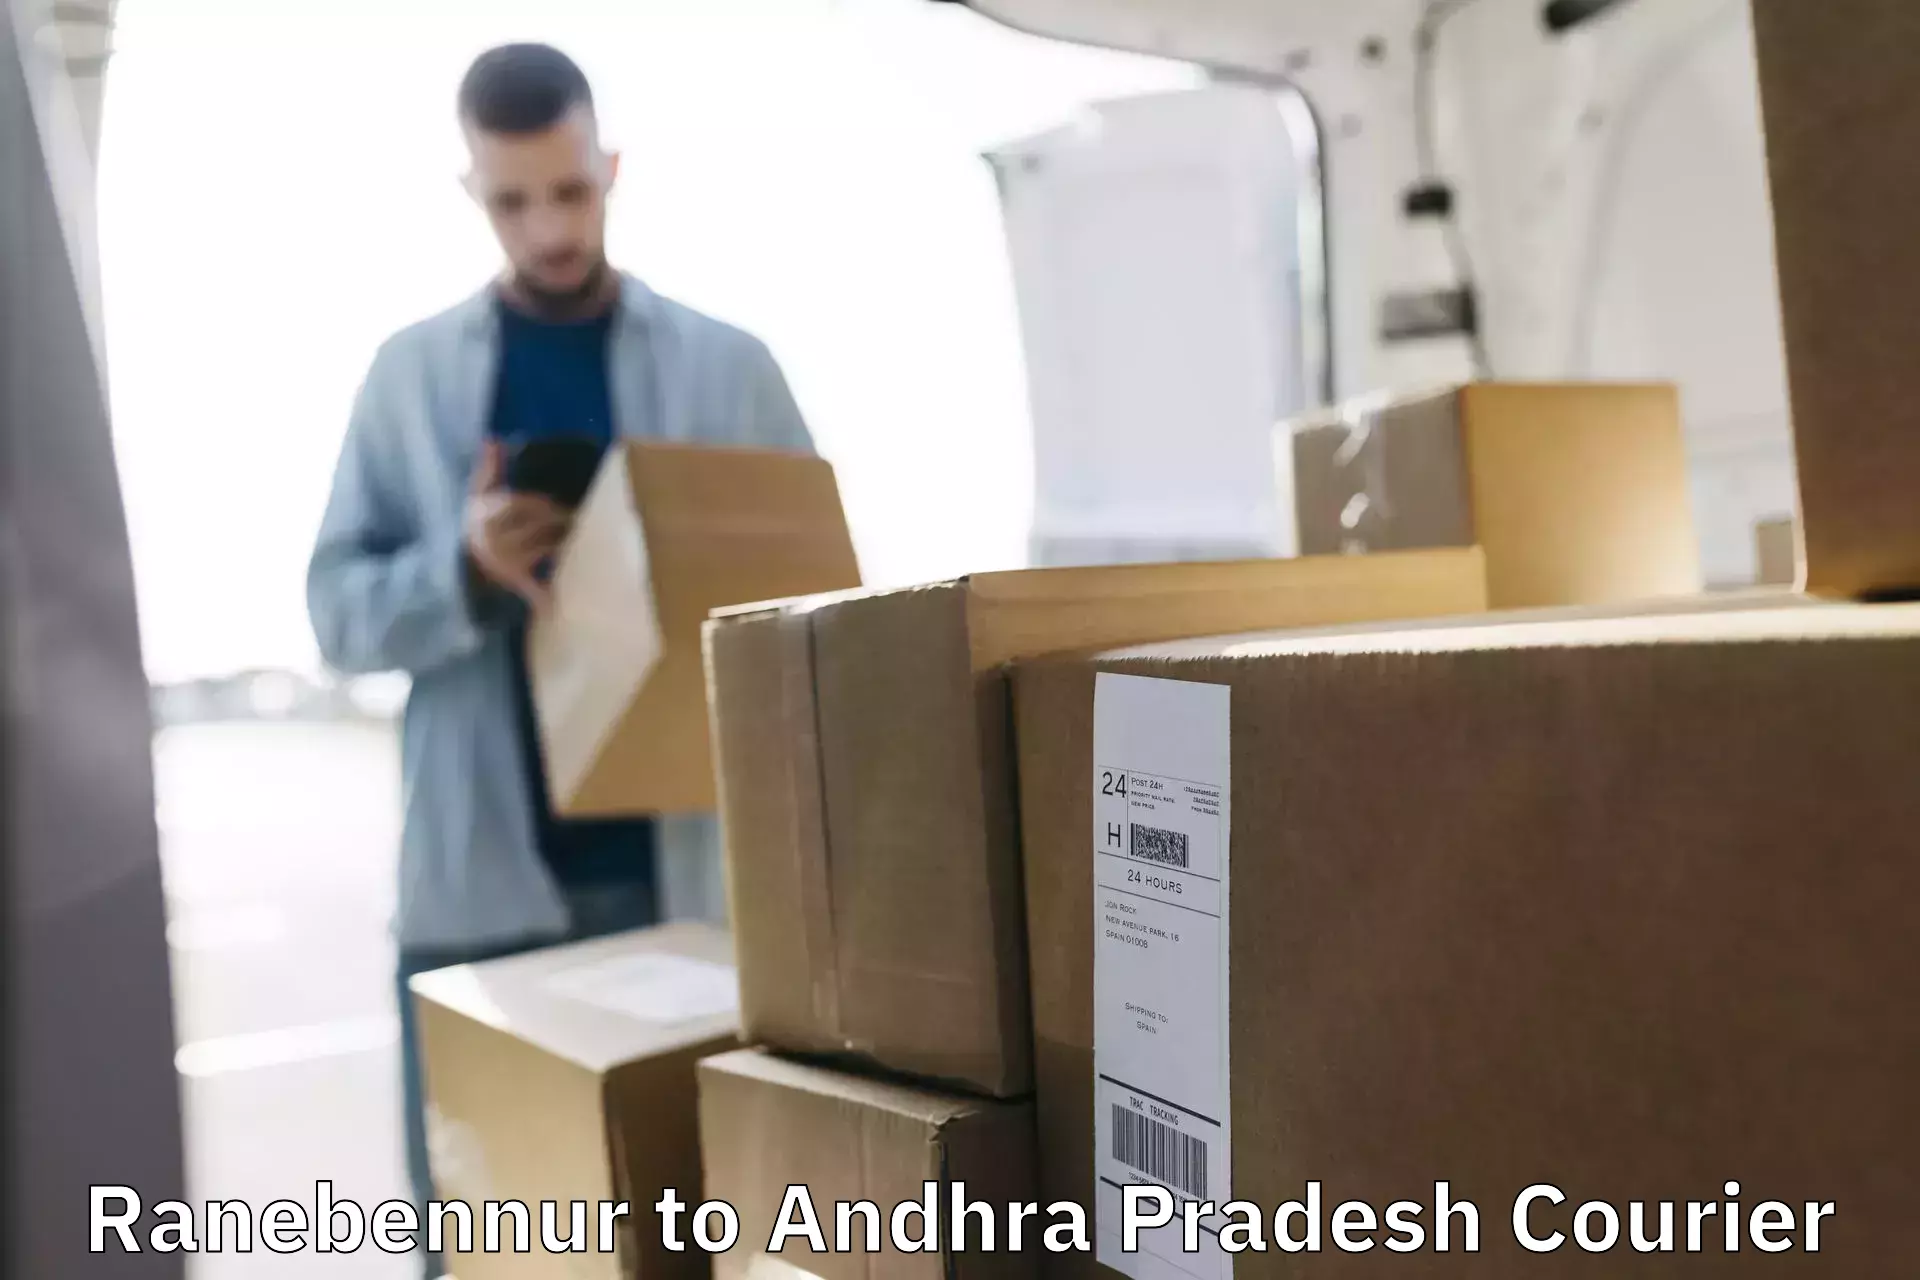 Next-generation courier services Ranebennur to Andhra Pradesh